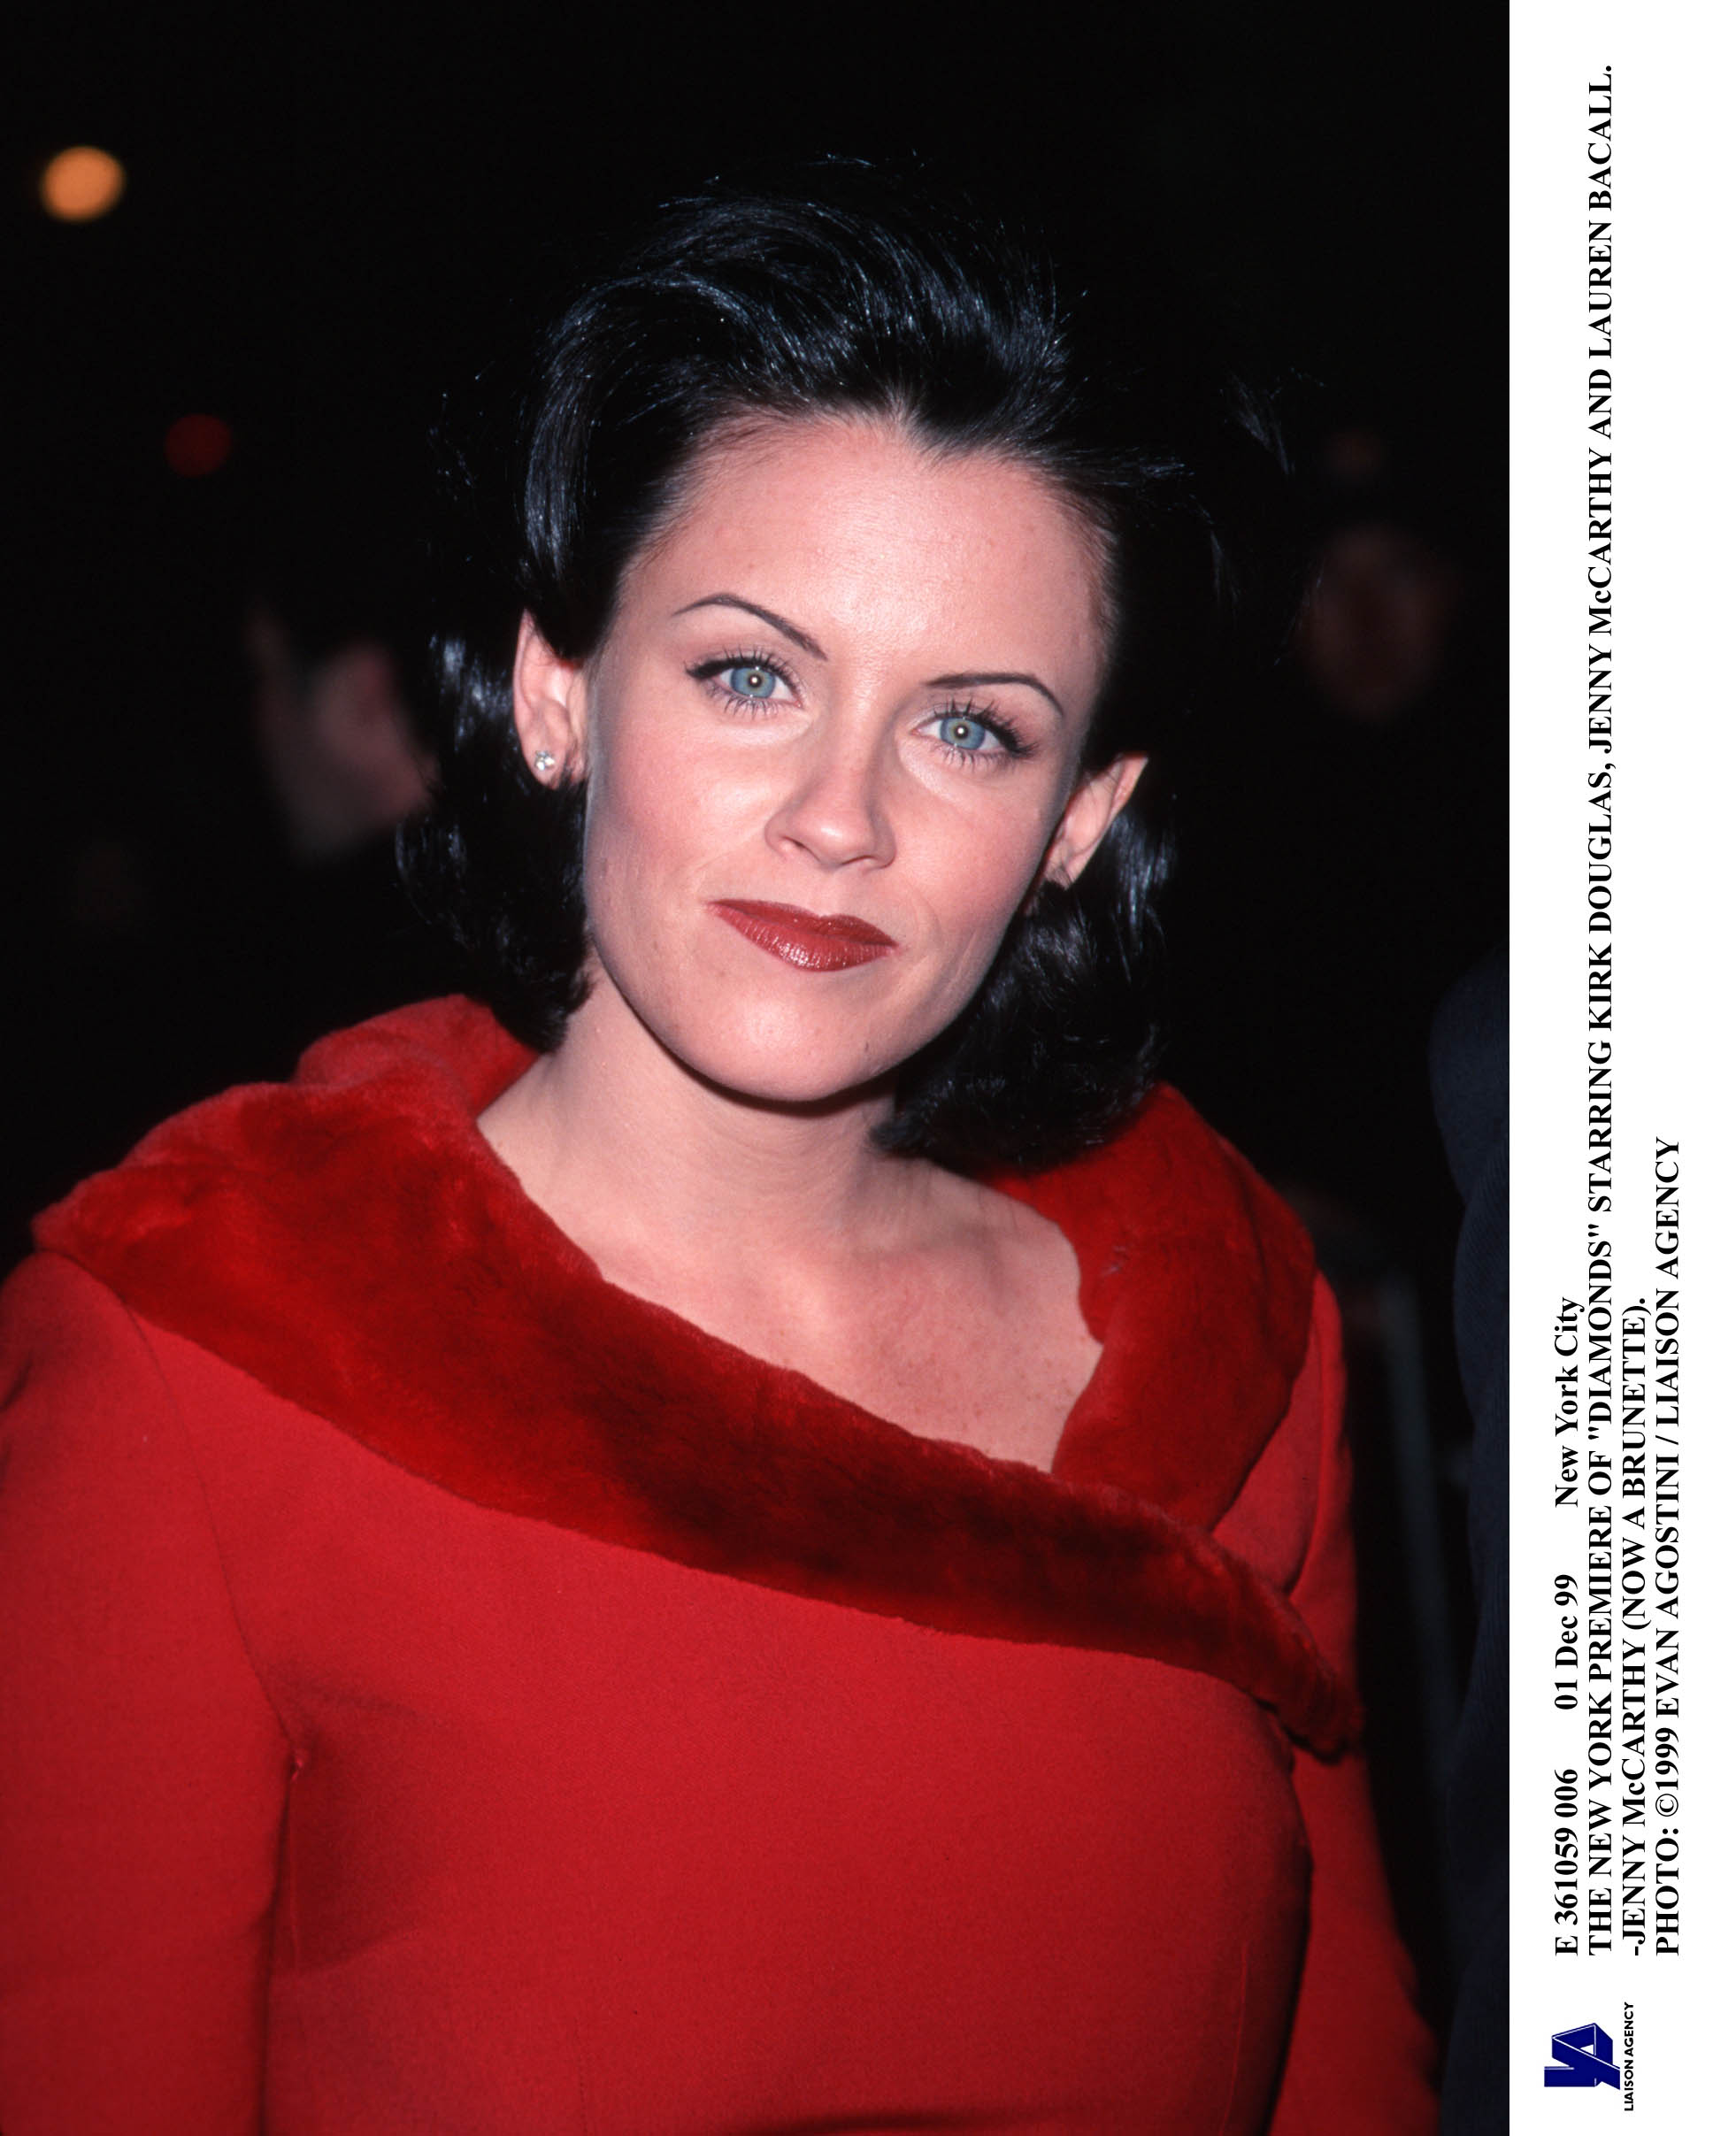 Jenny McCarthy en el estreno de "Diamonds" en Nueva York, 1991 | Fuente: Getty Images